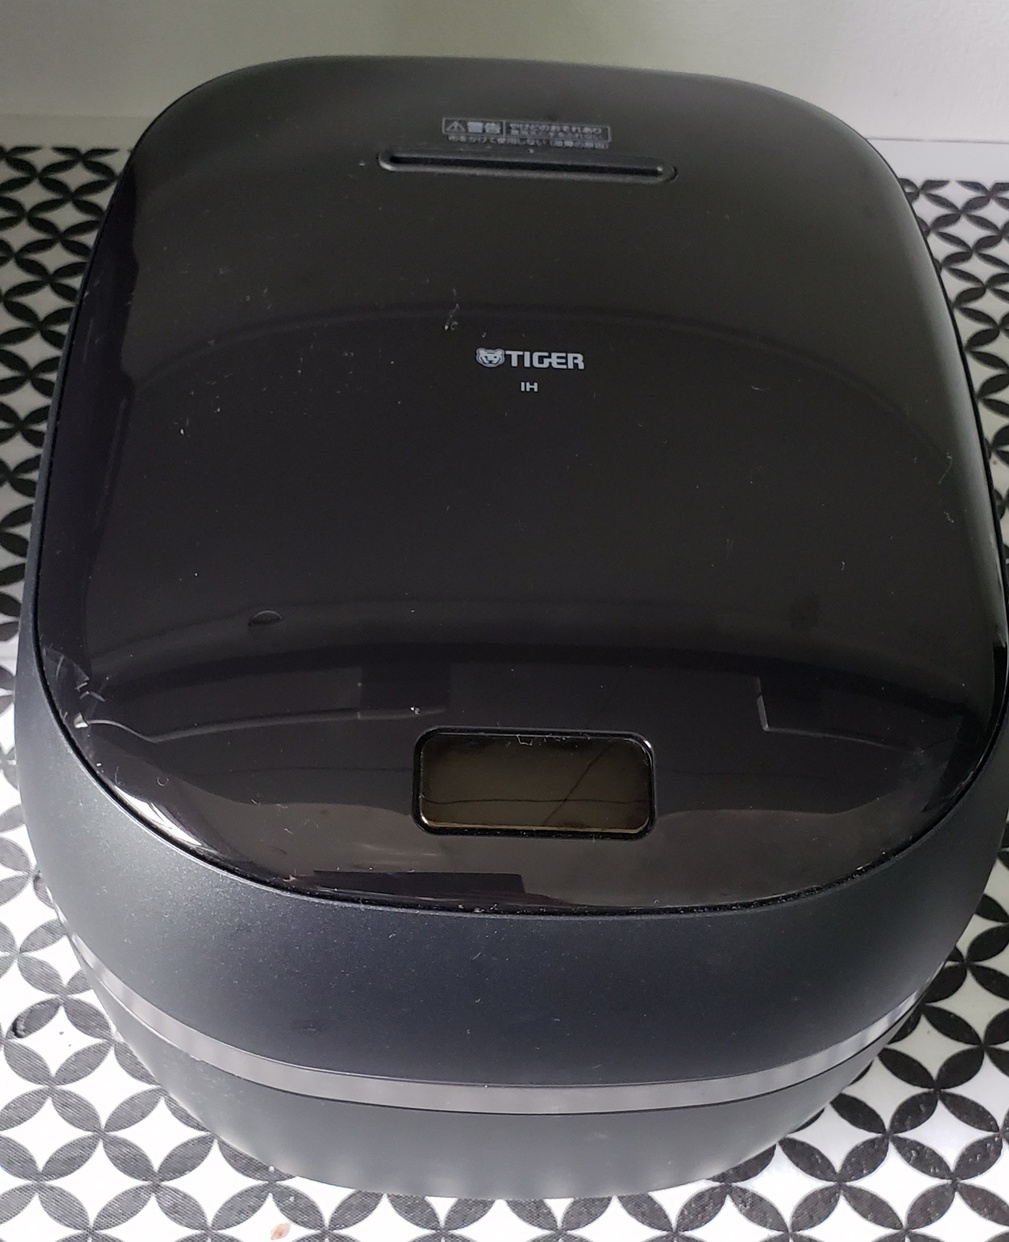 タイガー魔法瓶(TIGER) 土鍋圧力IHジャー炊飯器 JPG-S100を使ったせあらさんのクチコミ画像1